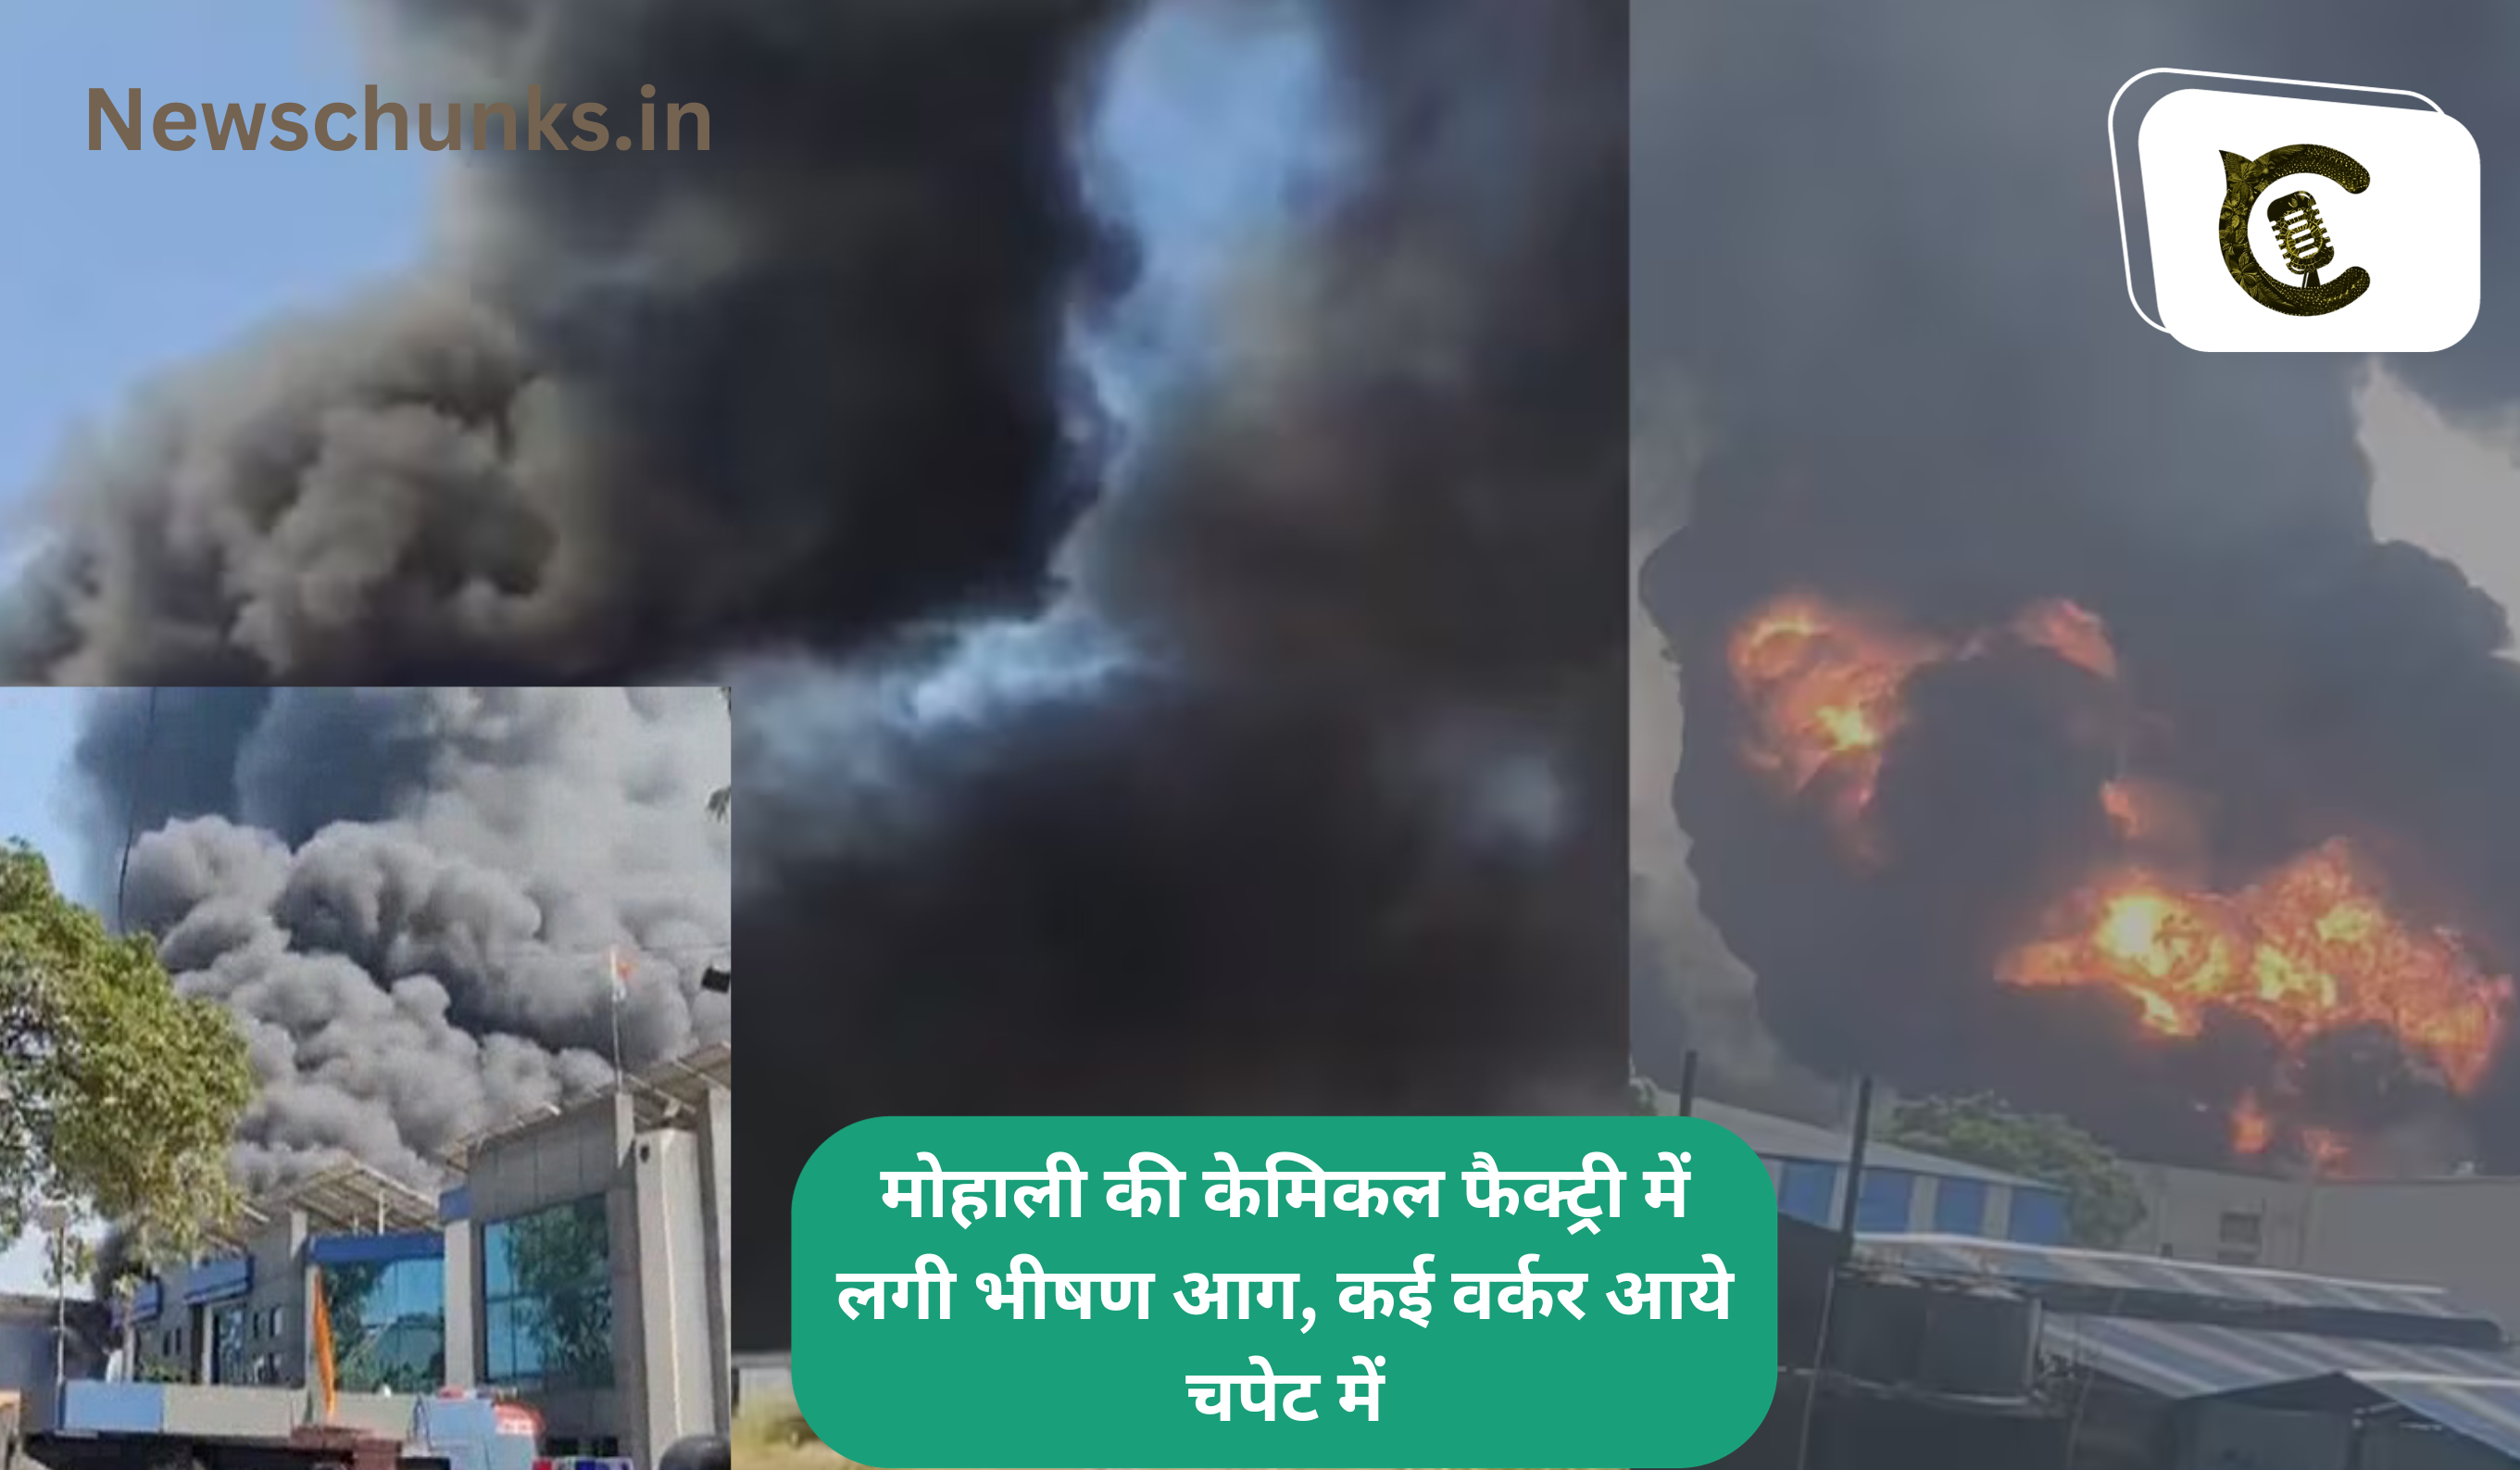 Mohali chemical plant fire news: मोहाली की केमिकल फैक्ट्री में लगी भीषण आग, कई वर्कर आये चपेट में